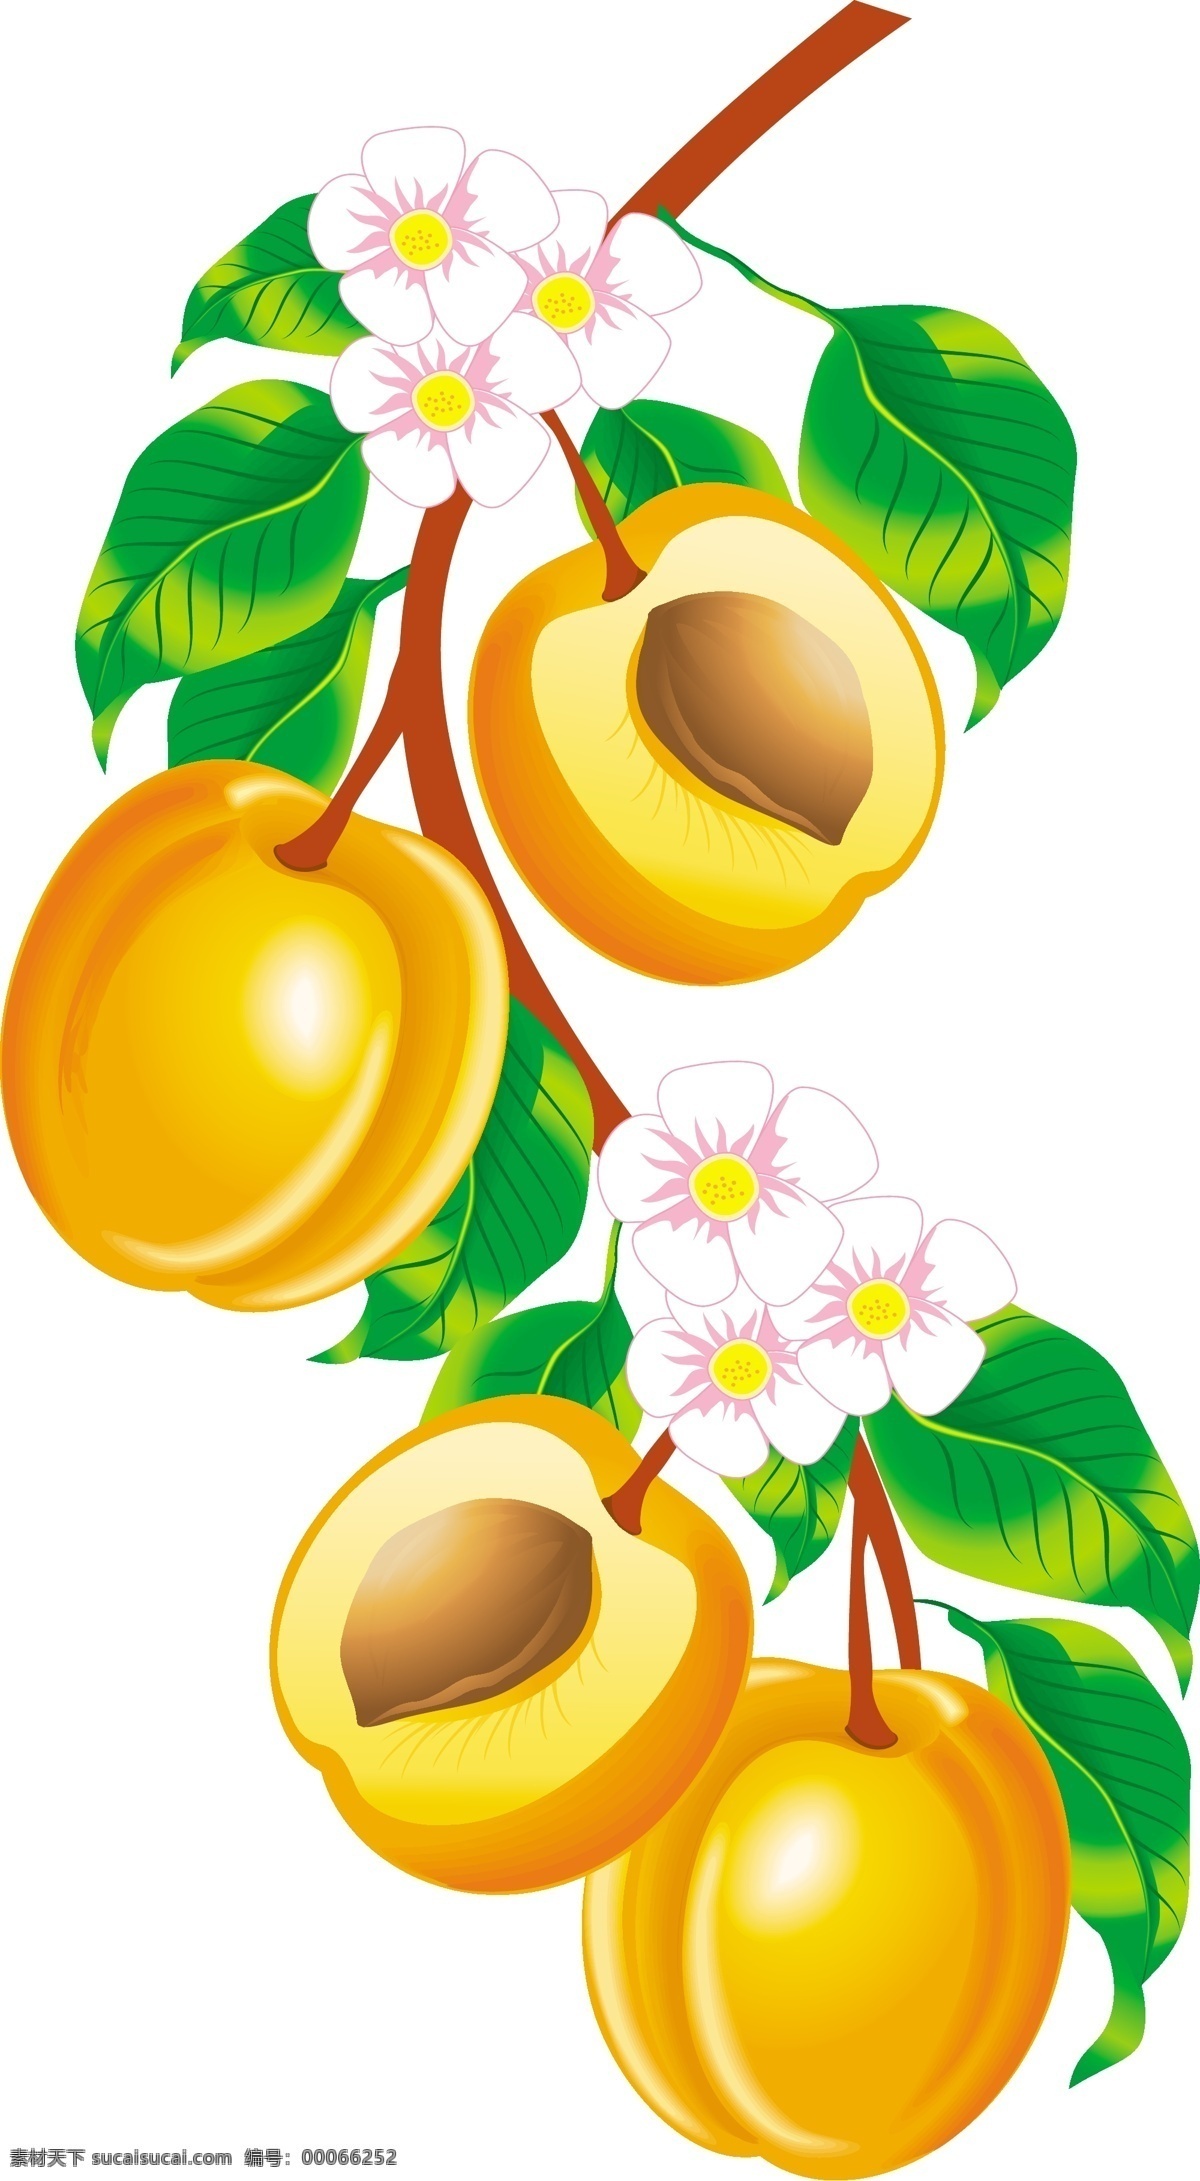 杏子免费下载 绿色食品 水果 杏子 矢量图 其他矢量图